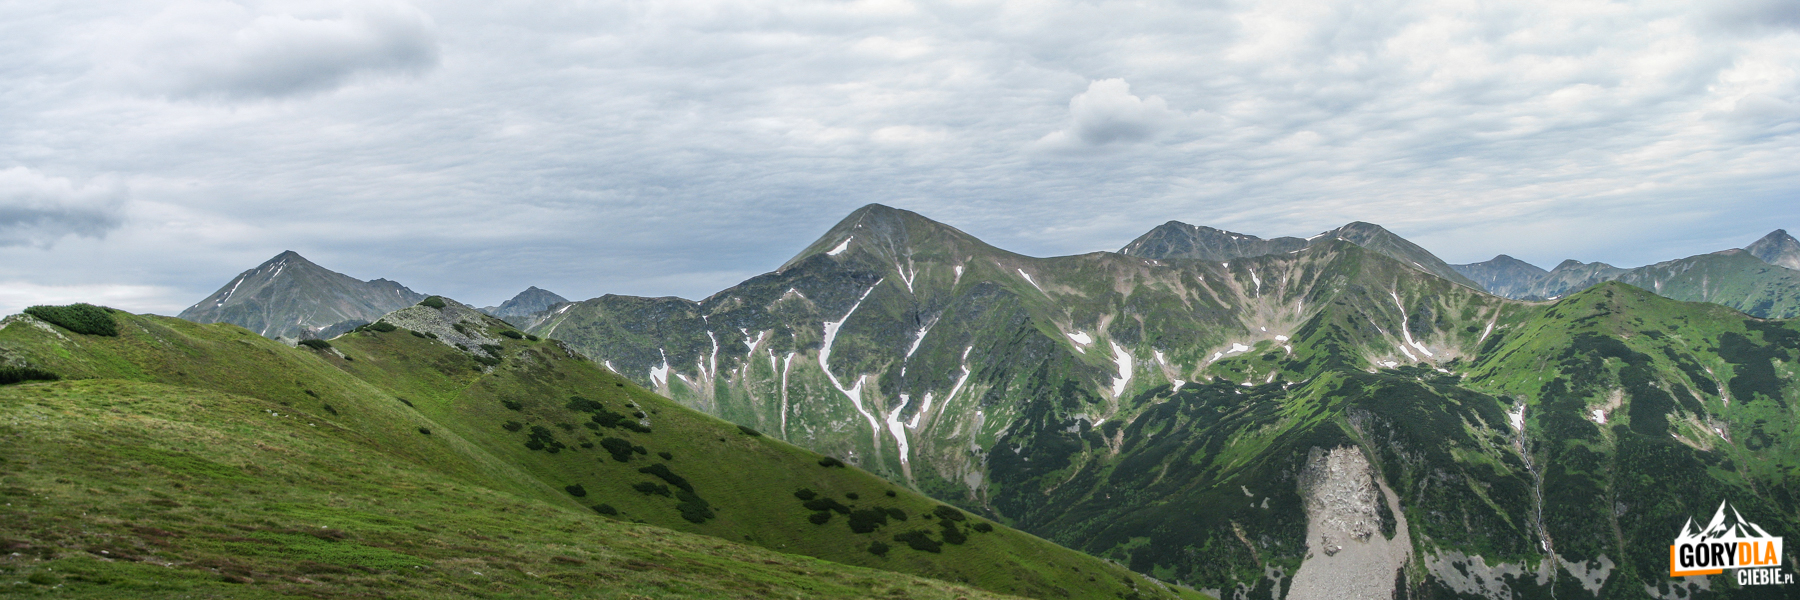 Widok z Suchego Wierchu Ornaczańskiego (1832 m) - od lewej: Błyszcz (2158 m) i Bystra (2248 m), Zadnia Kopa (2162 m), Starorobociański Wierch (2176 m), Raczkowa Czuba (2194 m), Jarząbczy Wierch (2137 m), Baraniec (2185 m), Smrek (2082 m) i Rohacze